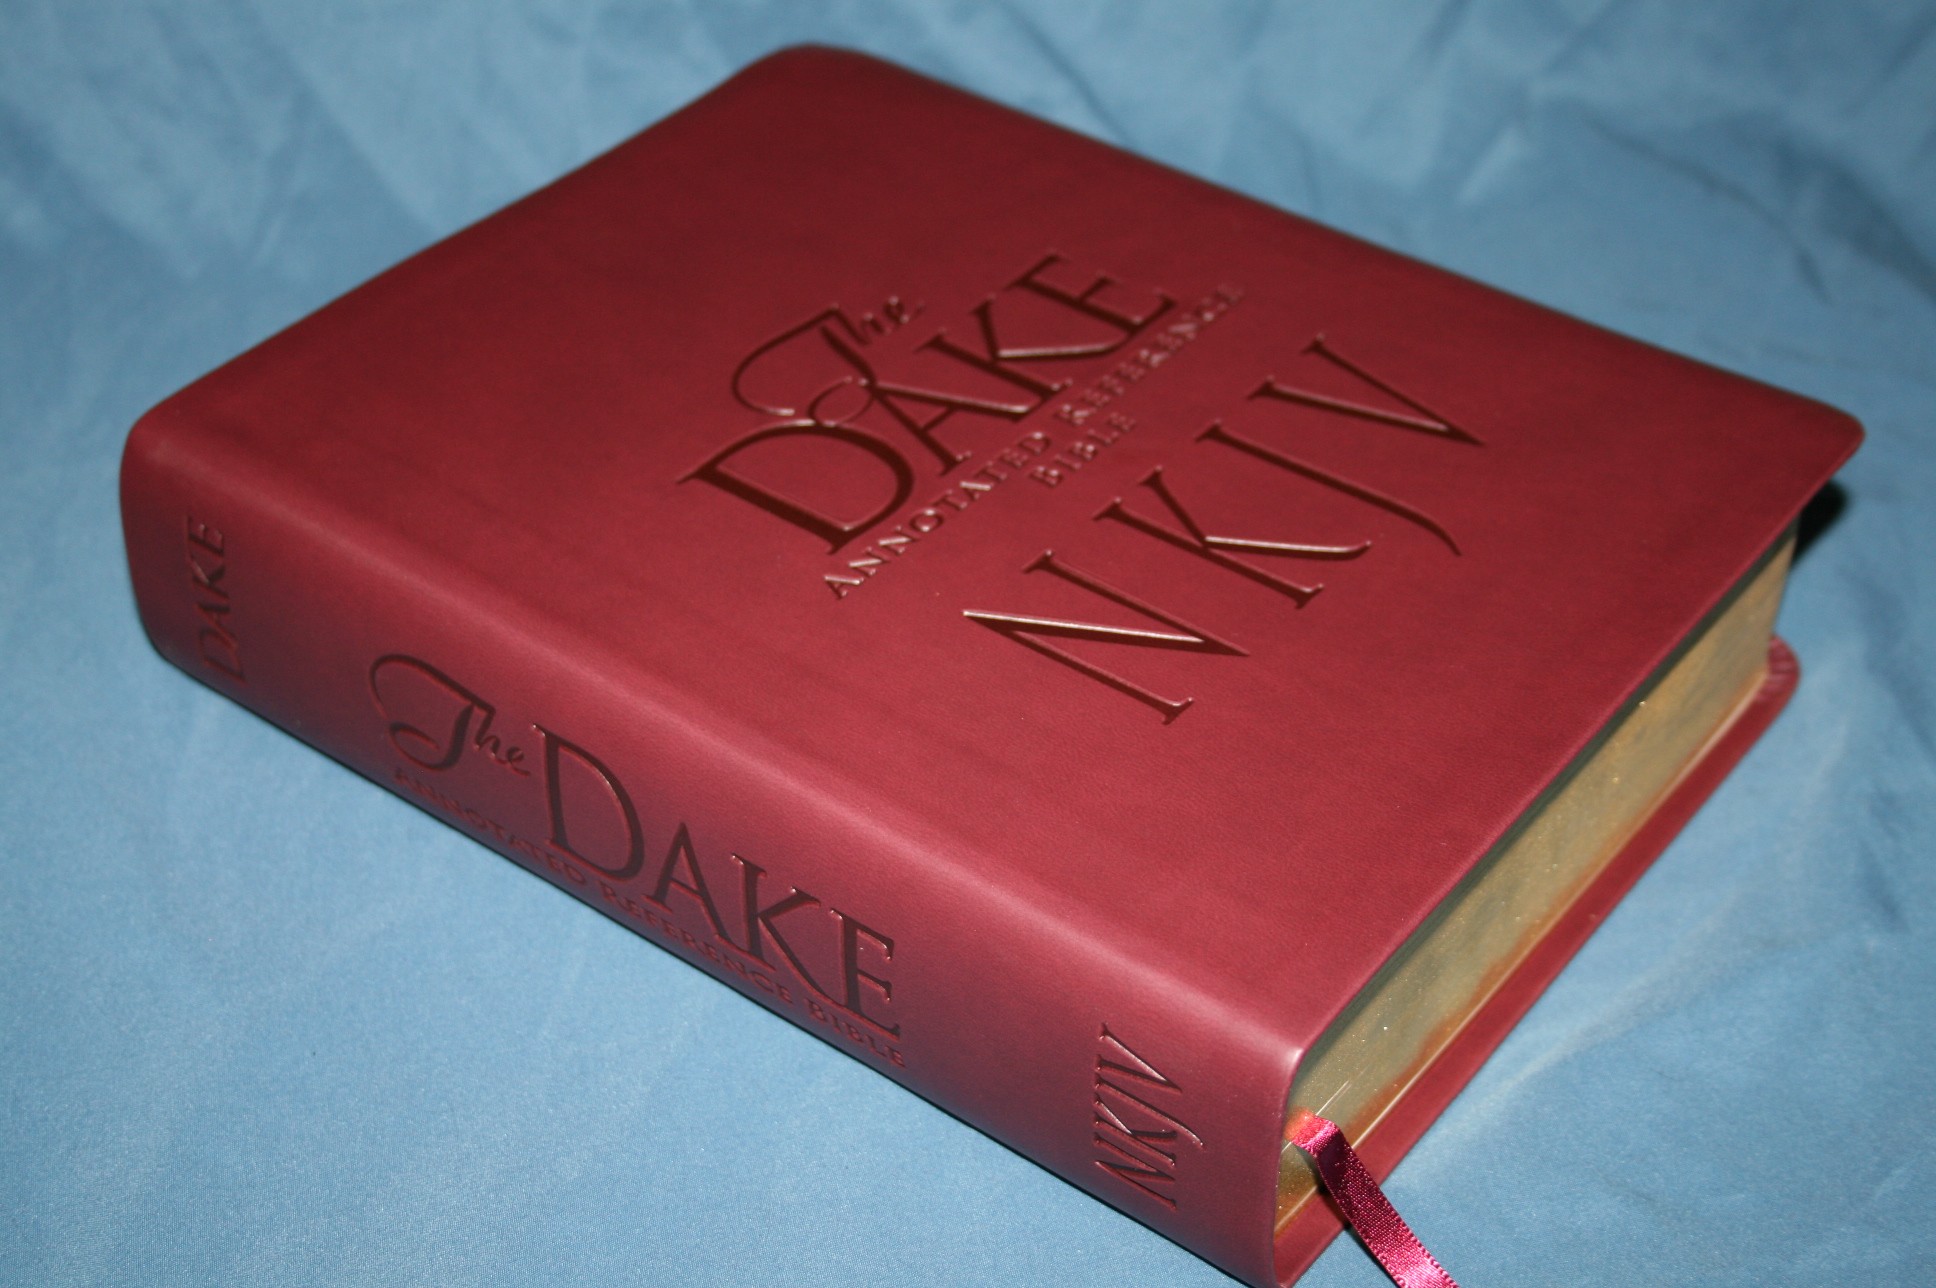 dake bible for free